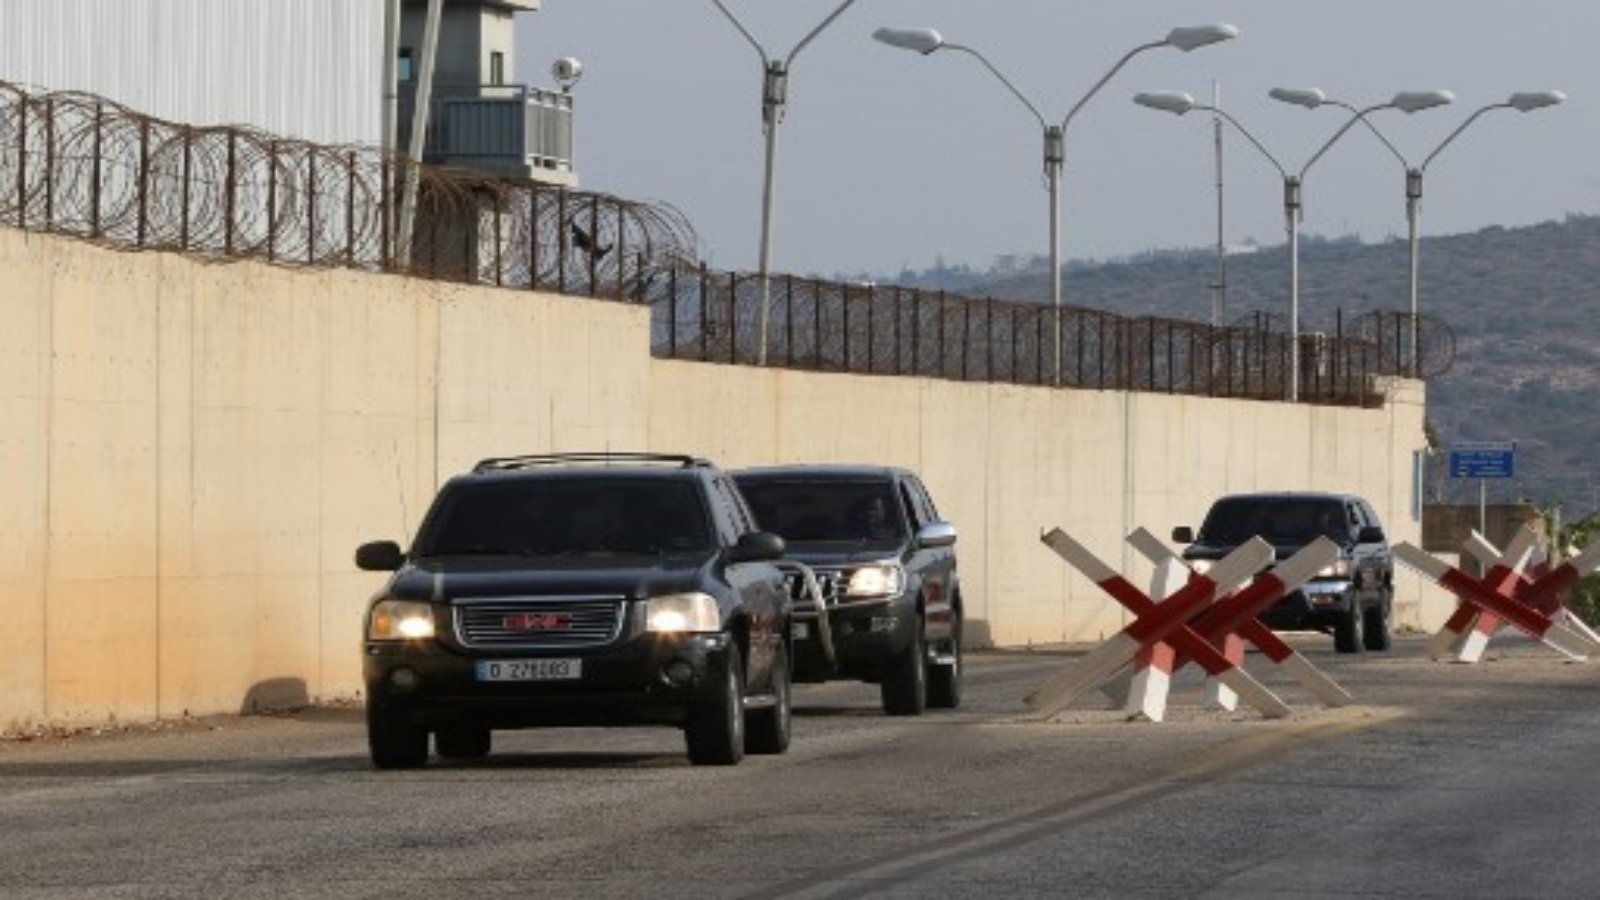 قافلة المندوبين اللبنانيين تتجه عبر بلدة الناقورة الحدودية جنوب لبنان باتجاه قاعدة الأمم المتحدة للجولة الثانية من المحادثات في 28 تشرين الأول / أكتوبر 2020 بين لبنان وإسرائيل حول ترسيم الحدود البحرية بين البلدين